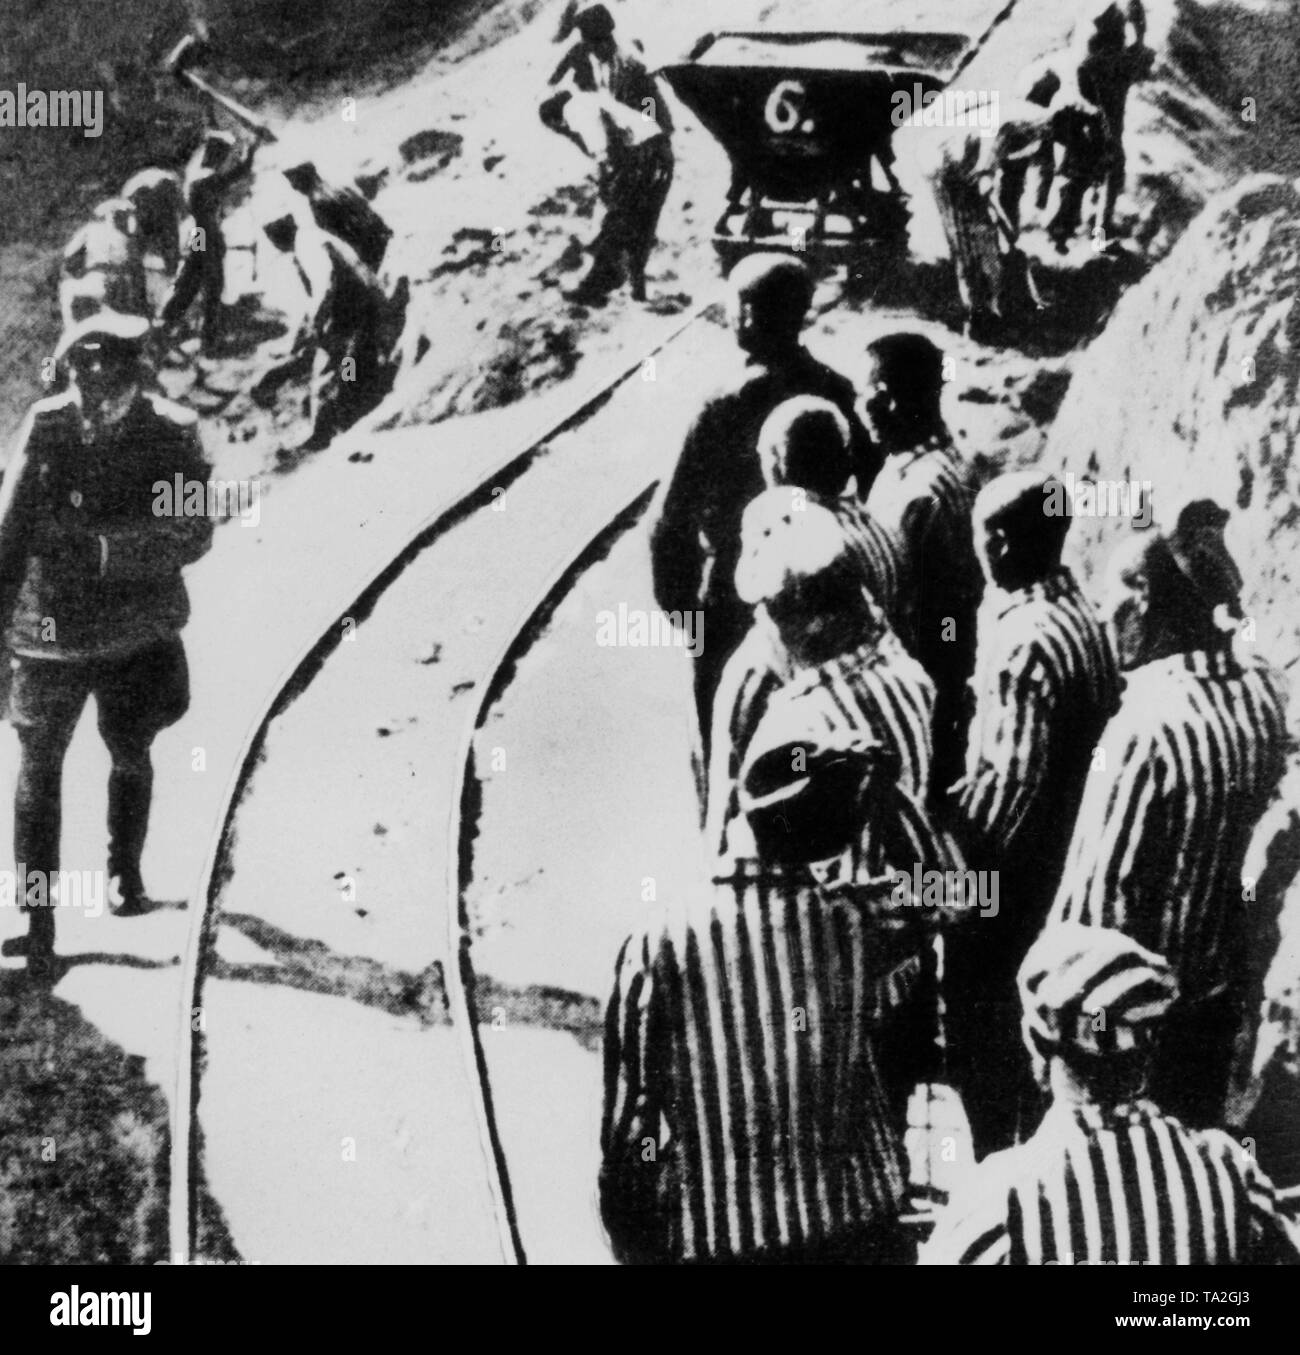 Détenus des camps de concentration dans une carrière (peut-être 'Wiener Graben') de le camp de concentration de Mauthausen. Photo non datée. Banque D'Images